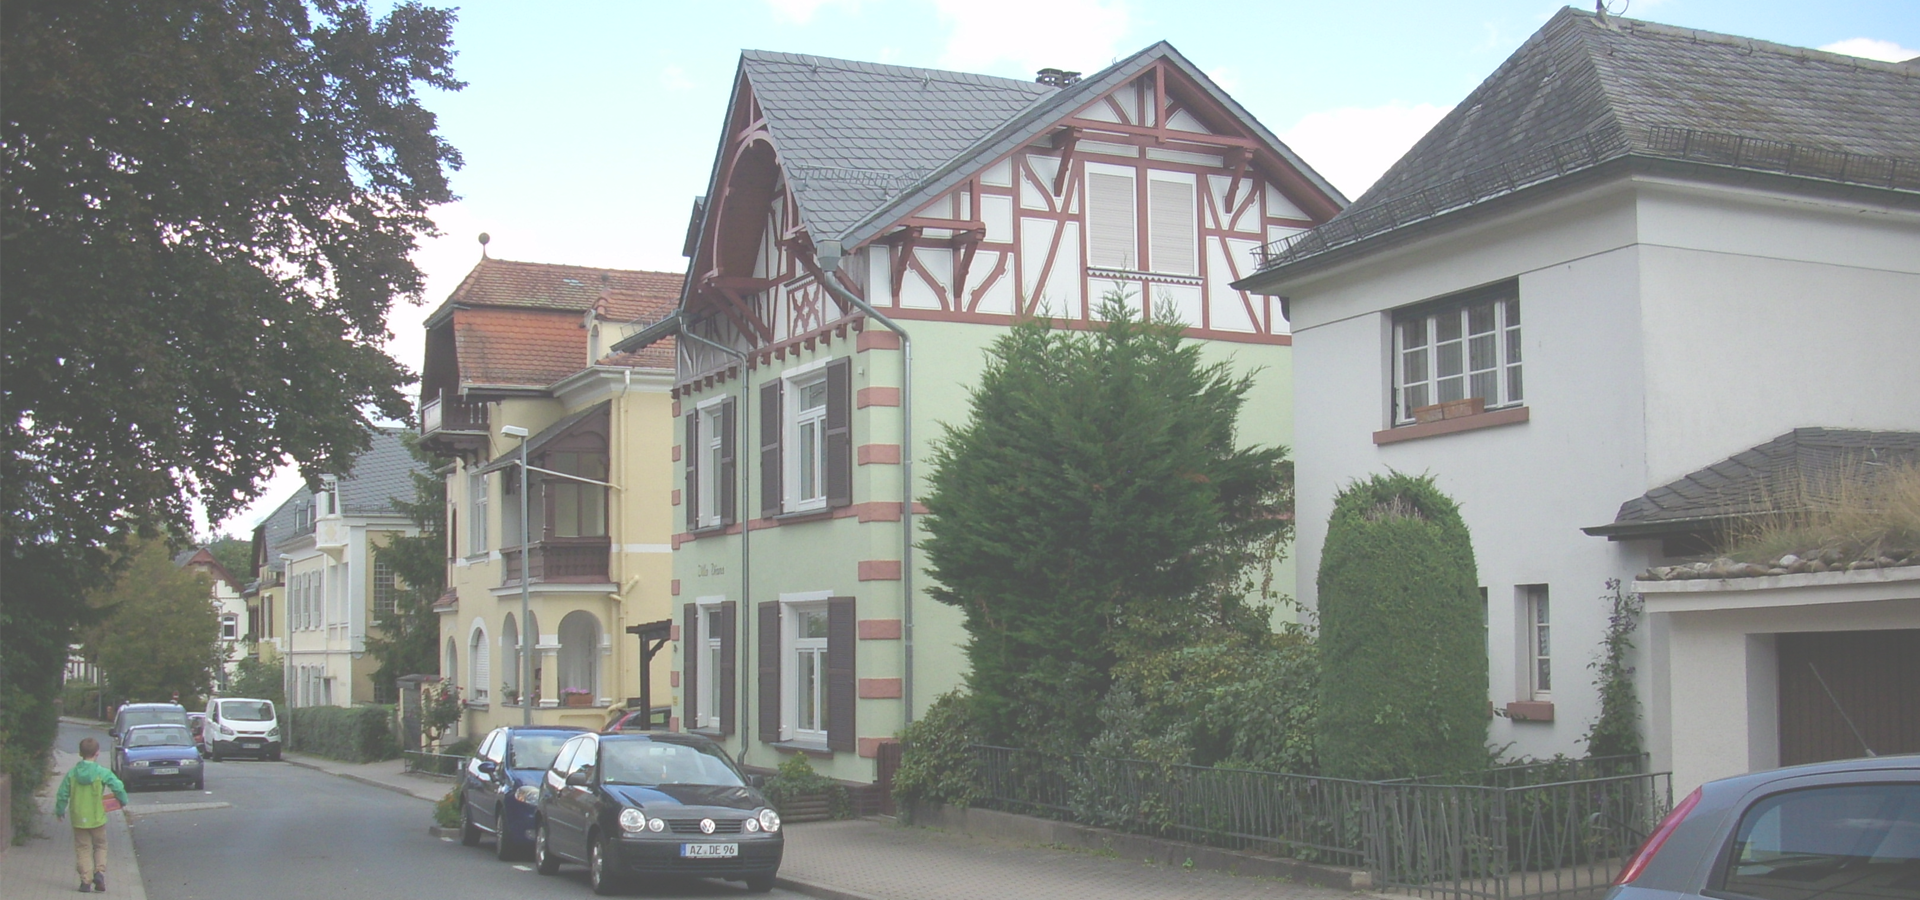 <b>Bad Schwalbach, Hesse, Germany</b>